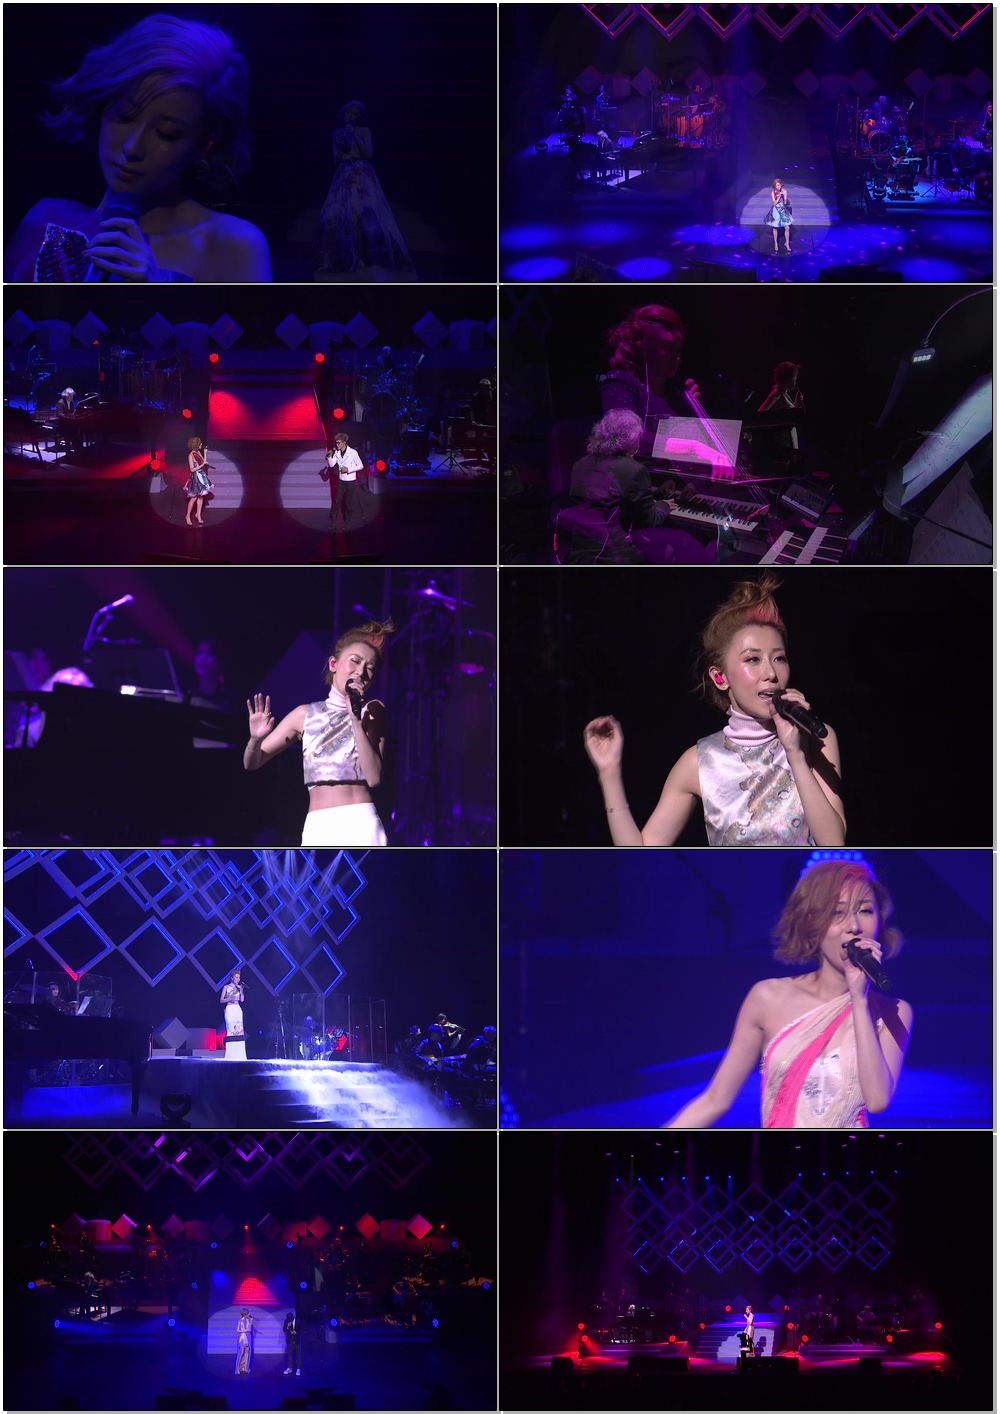 泳儿 – 爱情歌 泳儿音乐会 Vincy Live (2015) 1080P蓝光原盘 [BDMV 43.3G]Blu-ray、华语演唱会、蓝光演唱会4